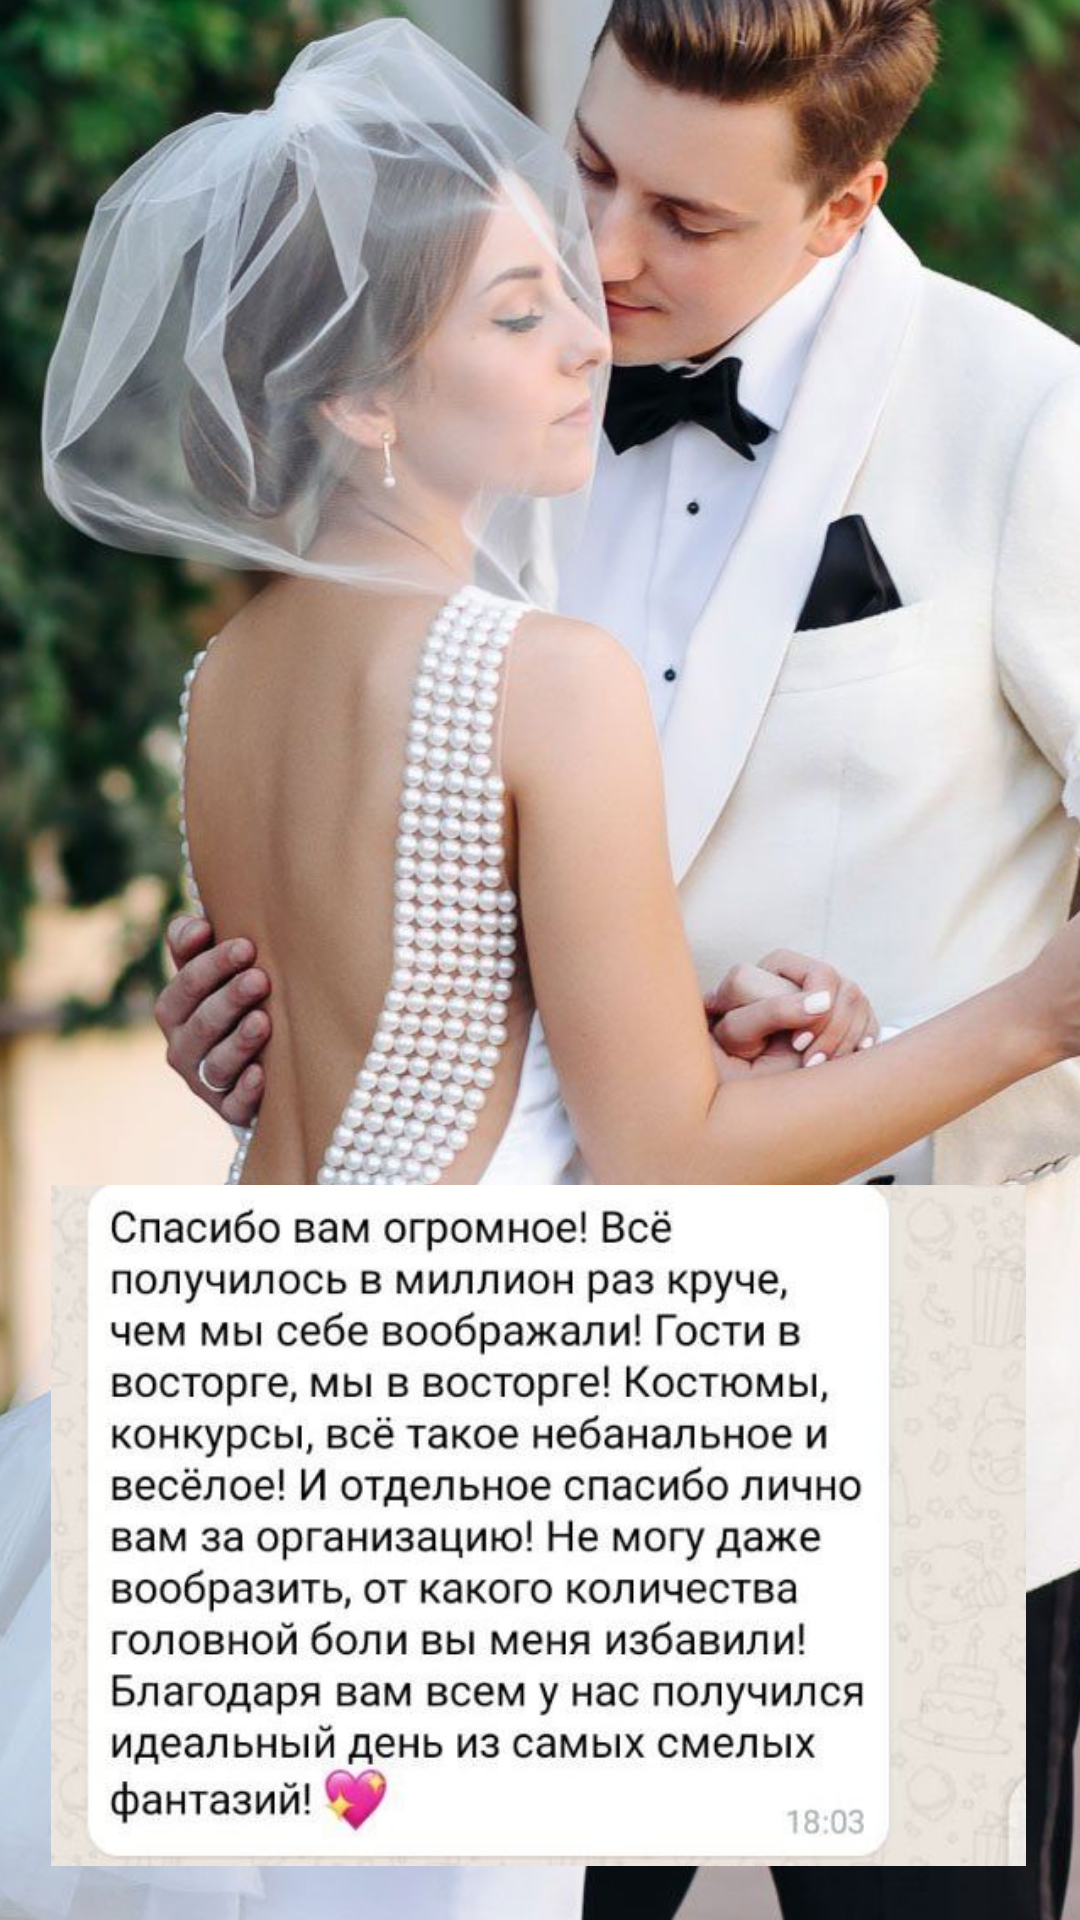 Организация свадьбы в Нижневартовске
от компании Pandaevent